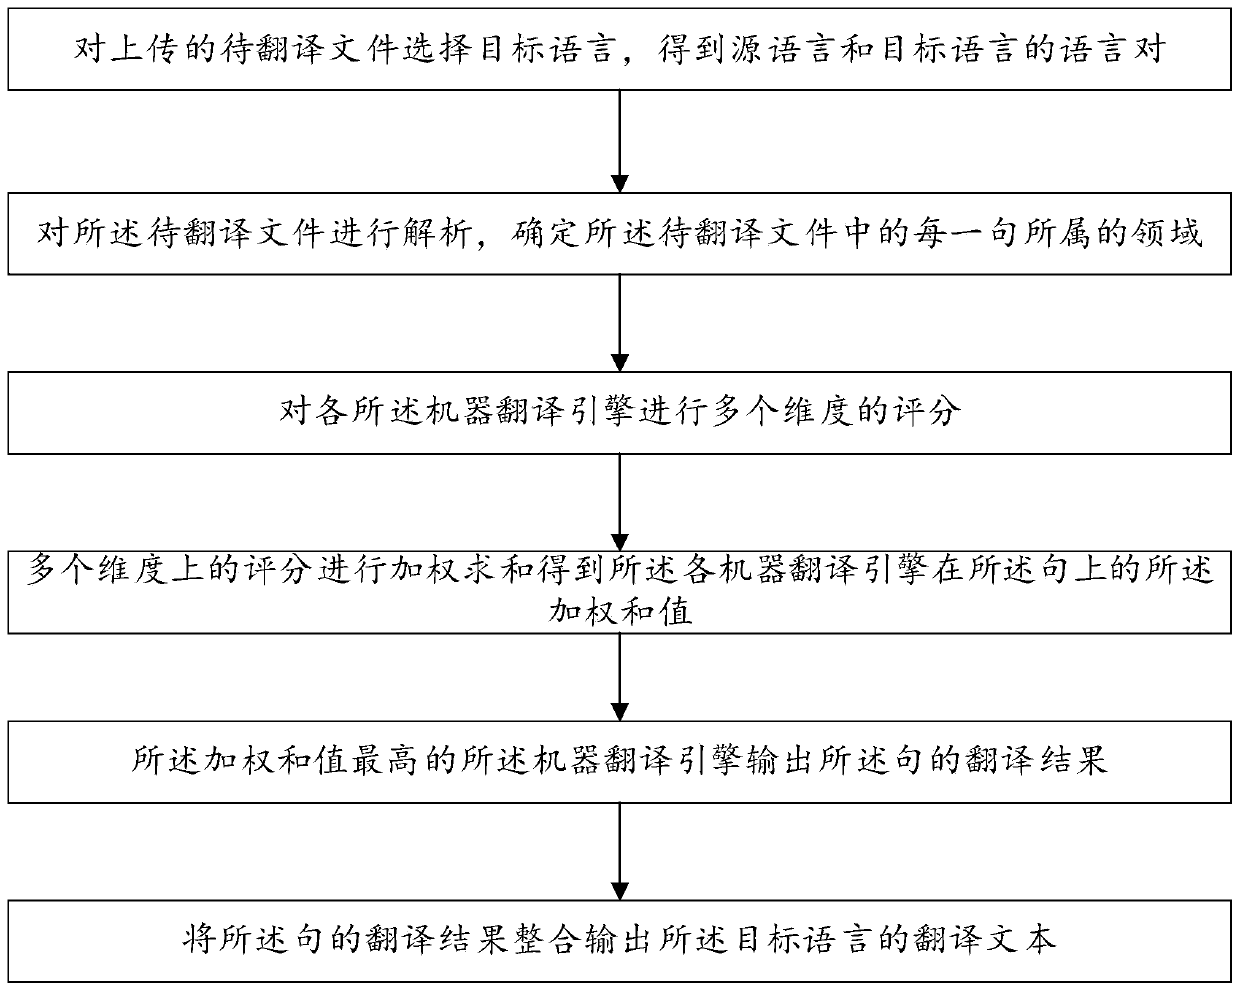 Sentence pair-based machine translation engine evaluation optimization method and system